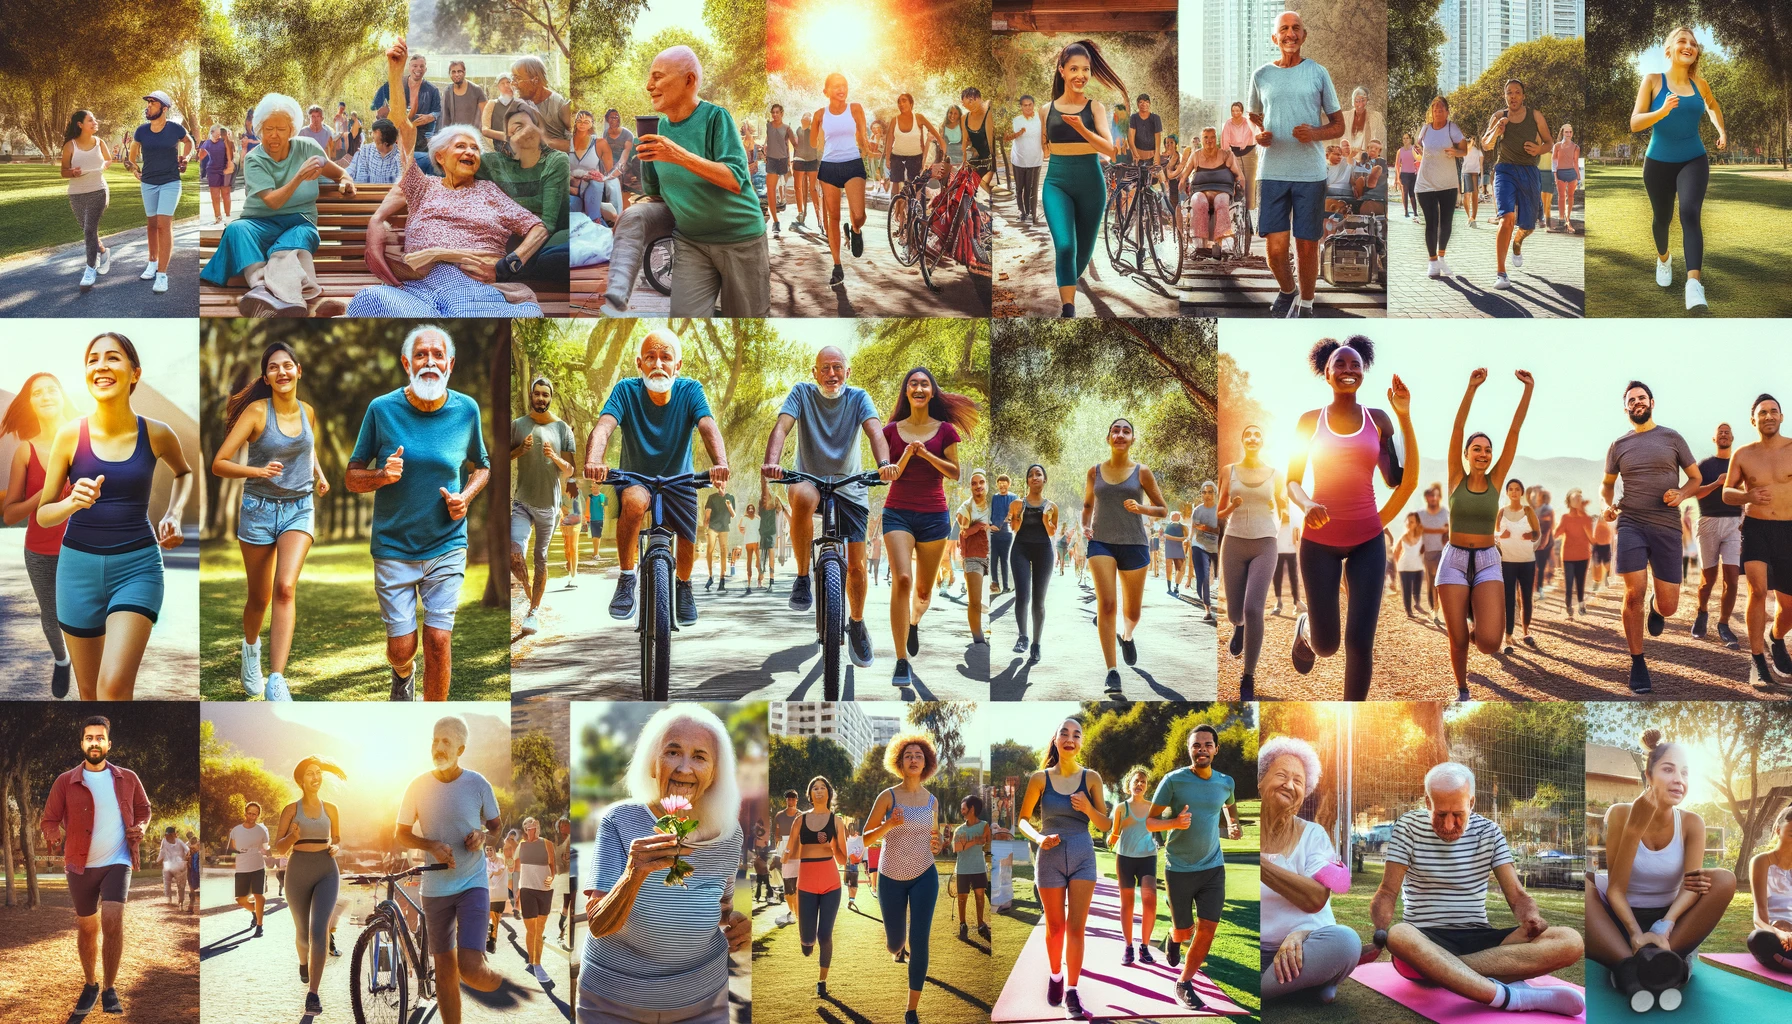 varias personas con diabetes de diferentes edades y etnias participando juntas en una variedad de ejercicios